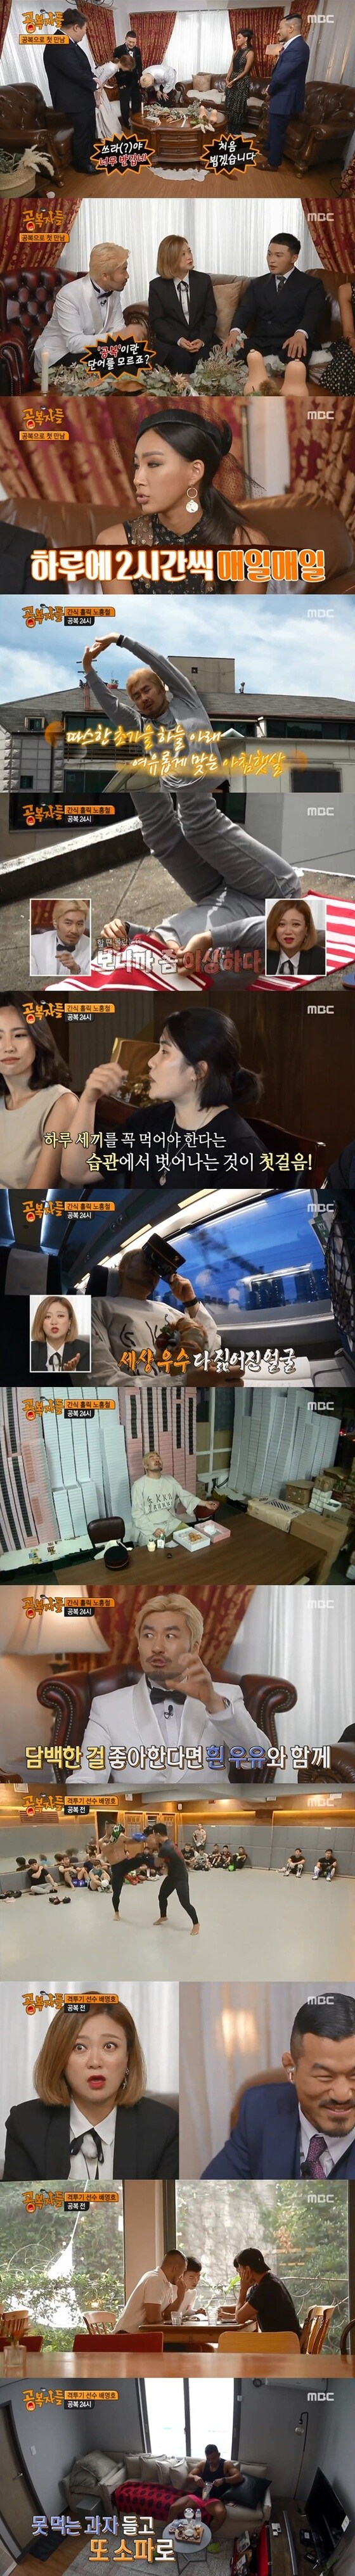 MBC '공복자들' 방송 화면 캡처 © News1